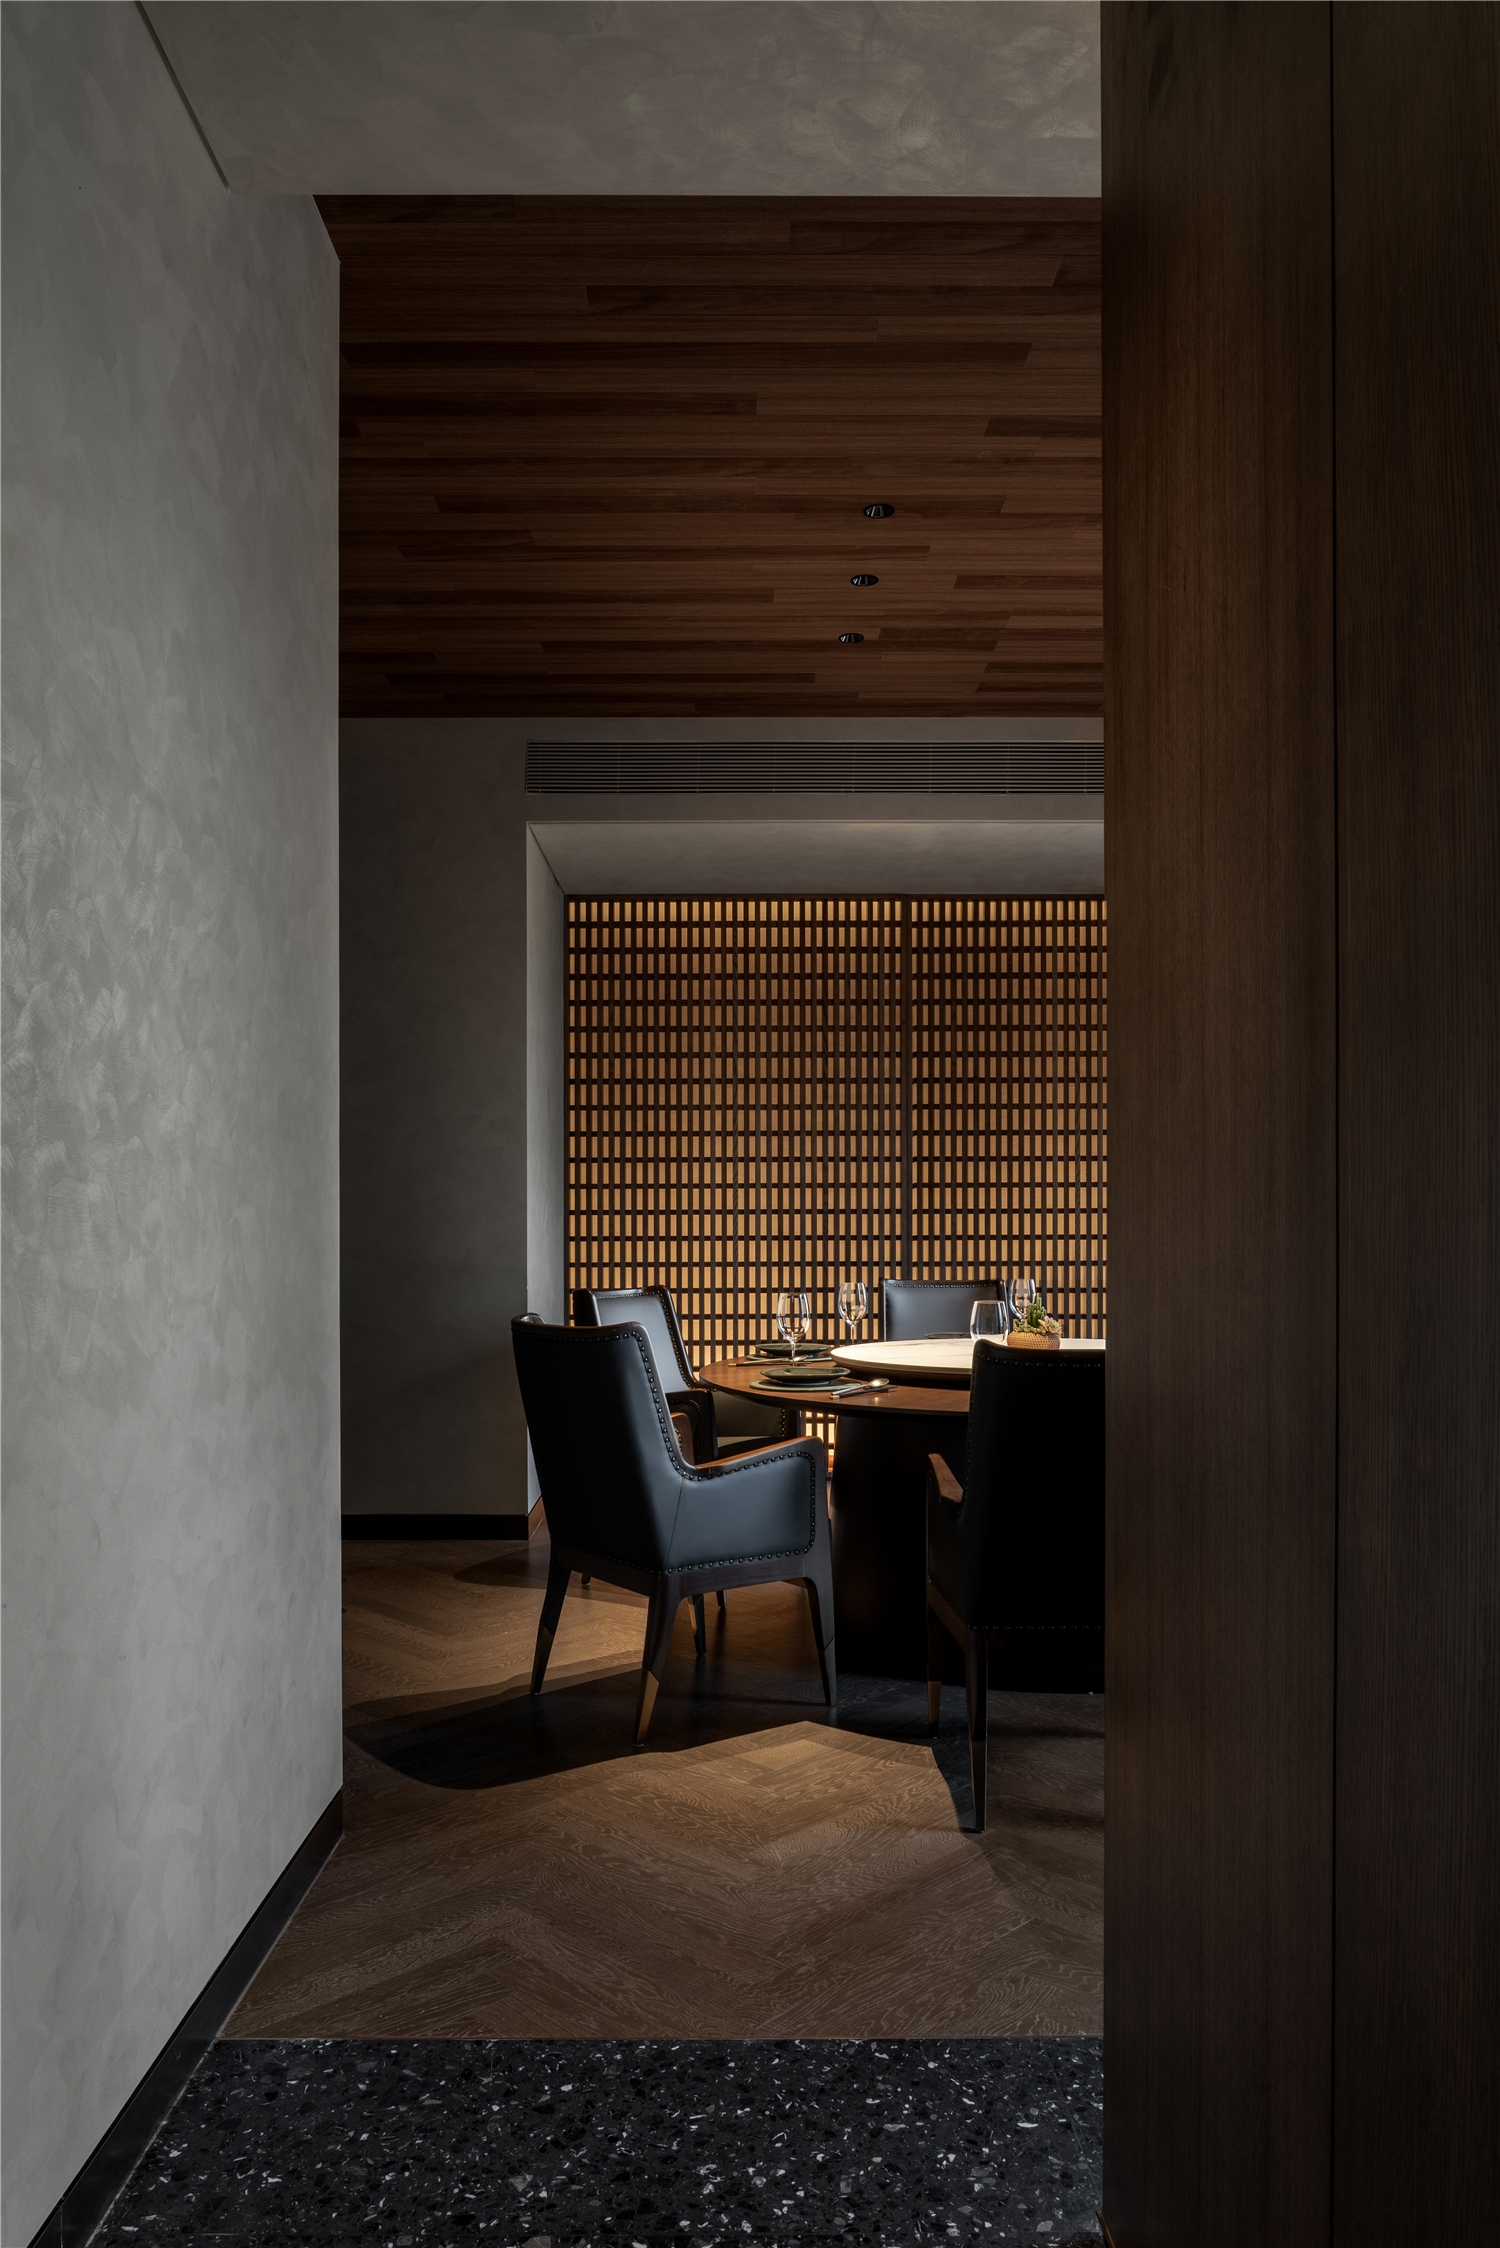 图片[11]|HONG 0871云南菜餐厅|ART-Arrakis | 建筑室内设计的创新与灵感